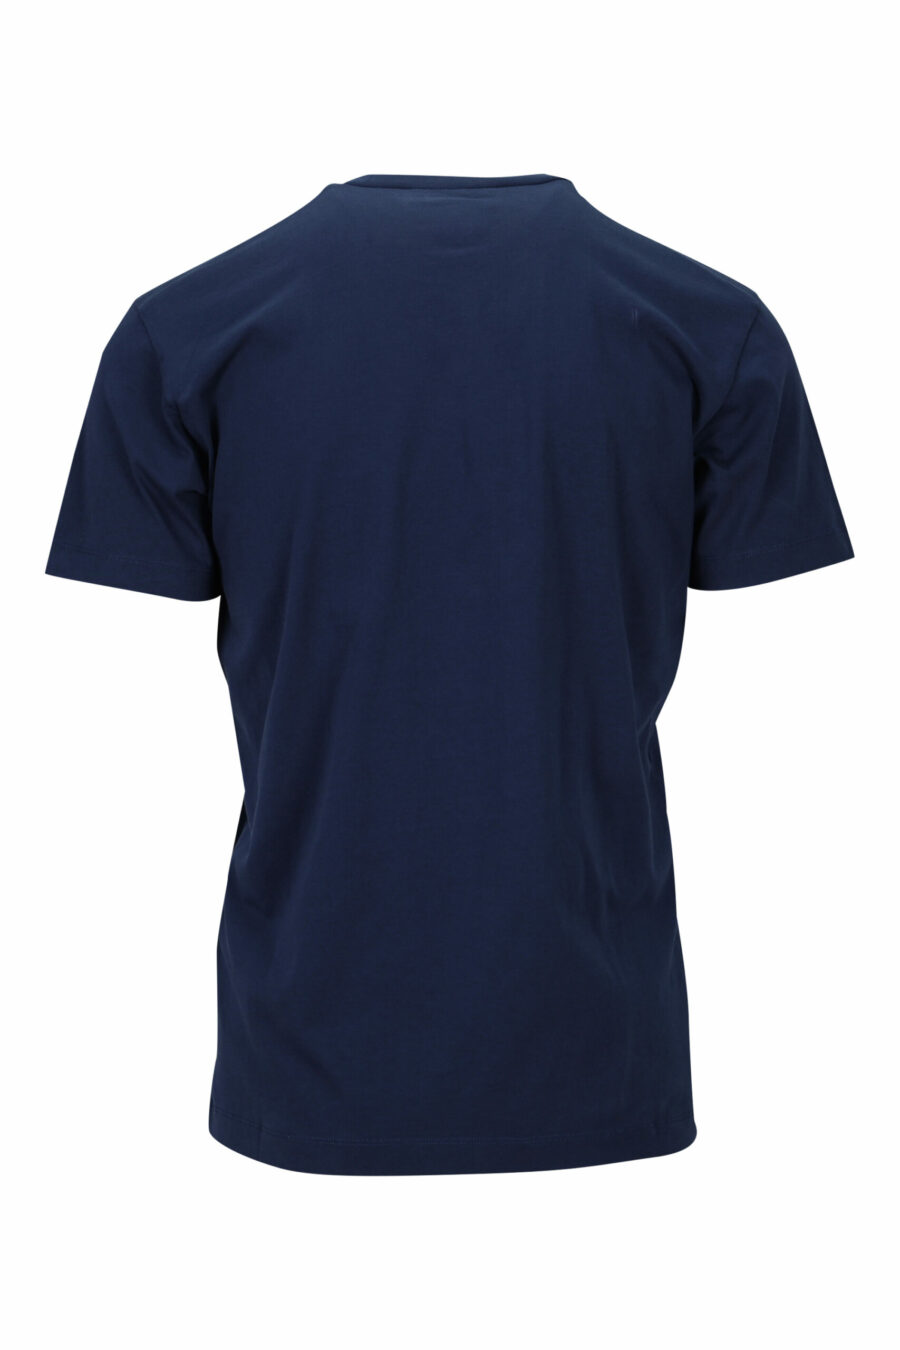 T-shirt bleu foncé avec maxilogo "ceresio 9, milano" - 8054148504915 1 scaled